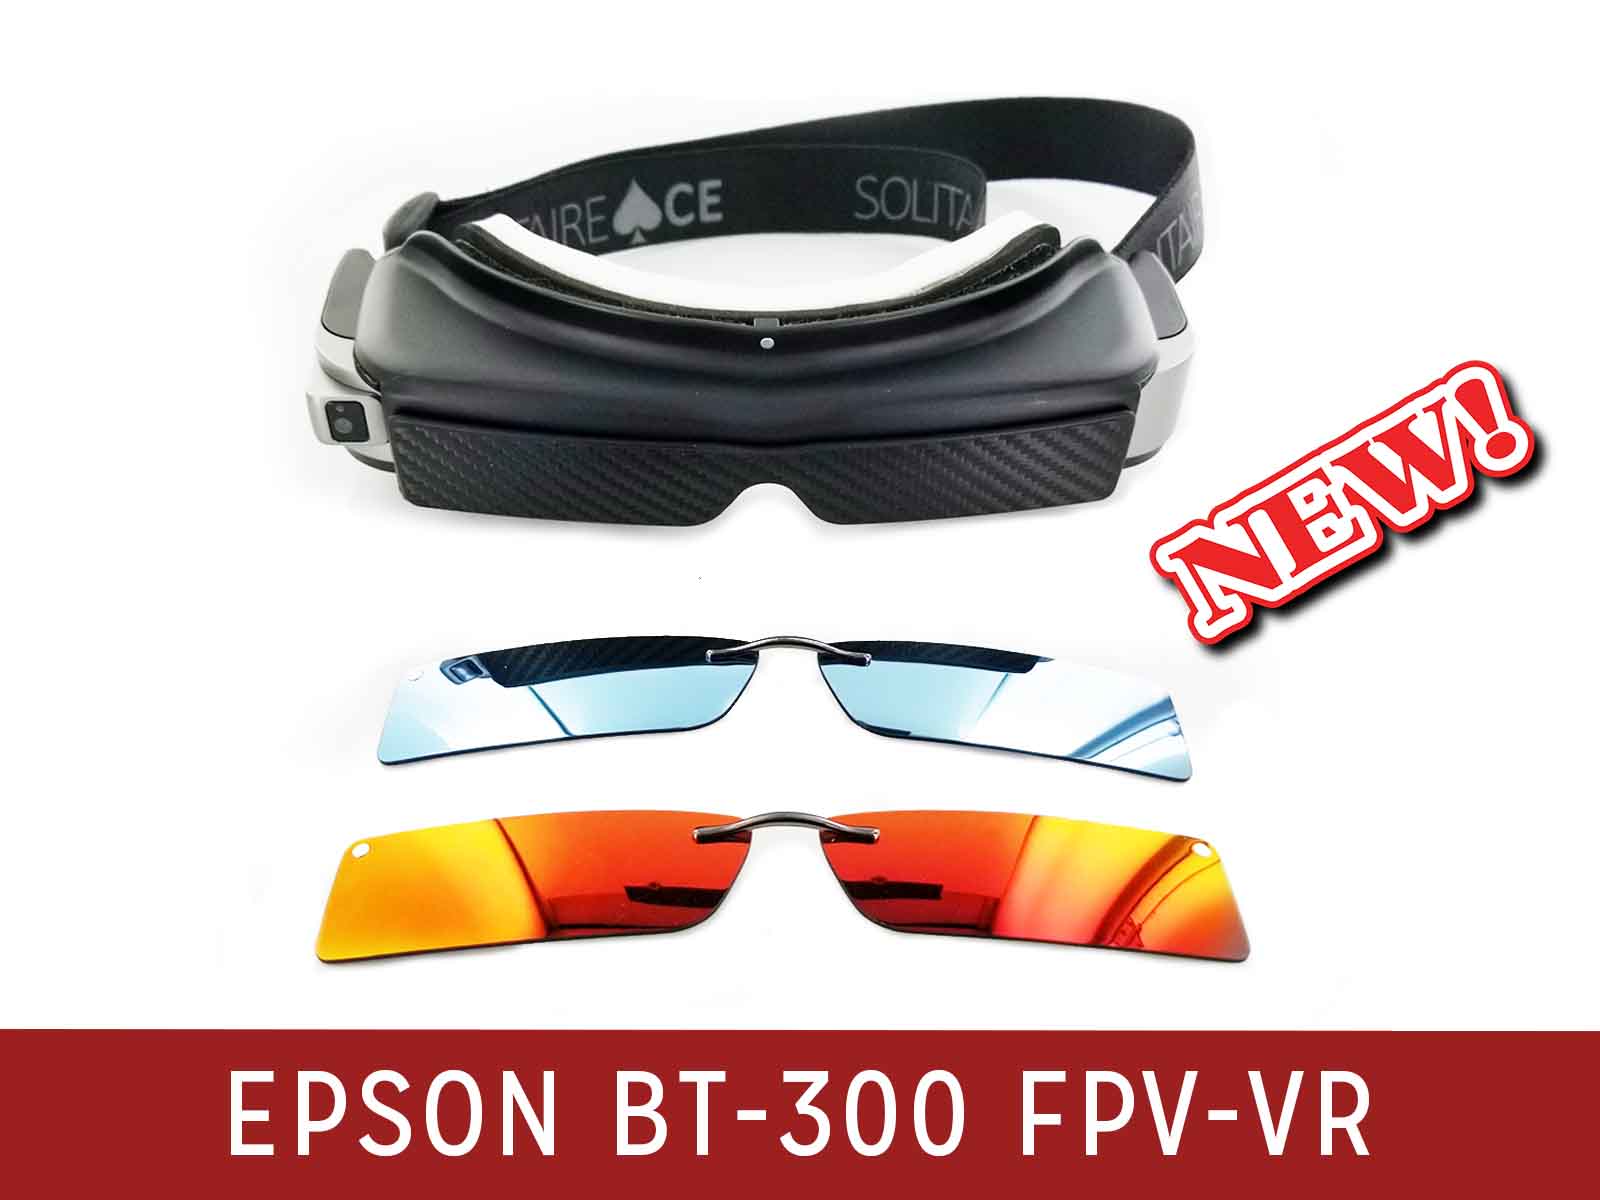 BT-300 FPV VR Combo - Smart Glasses Rochester